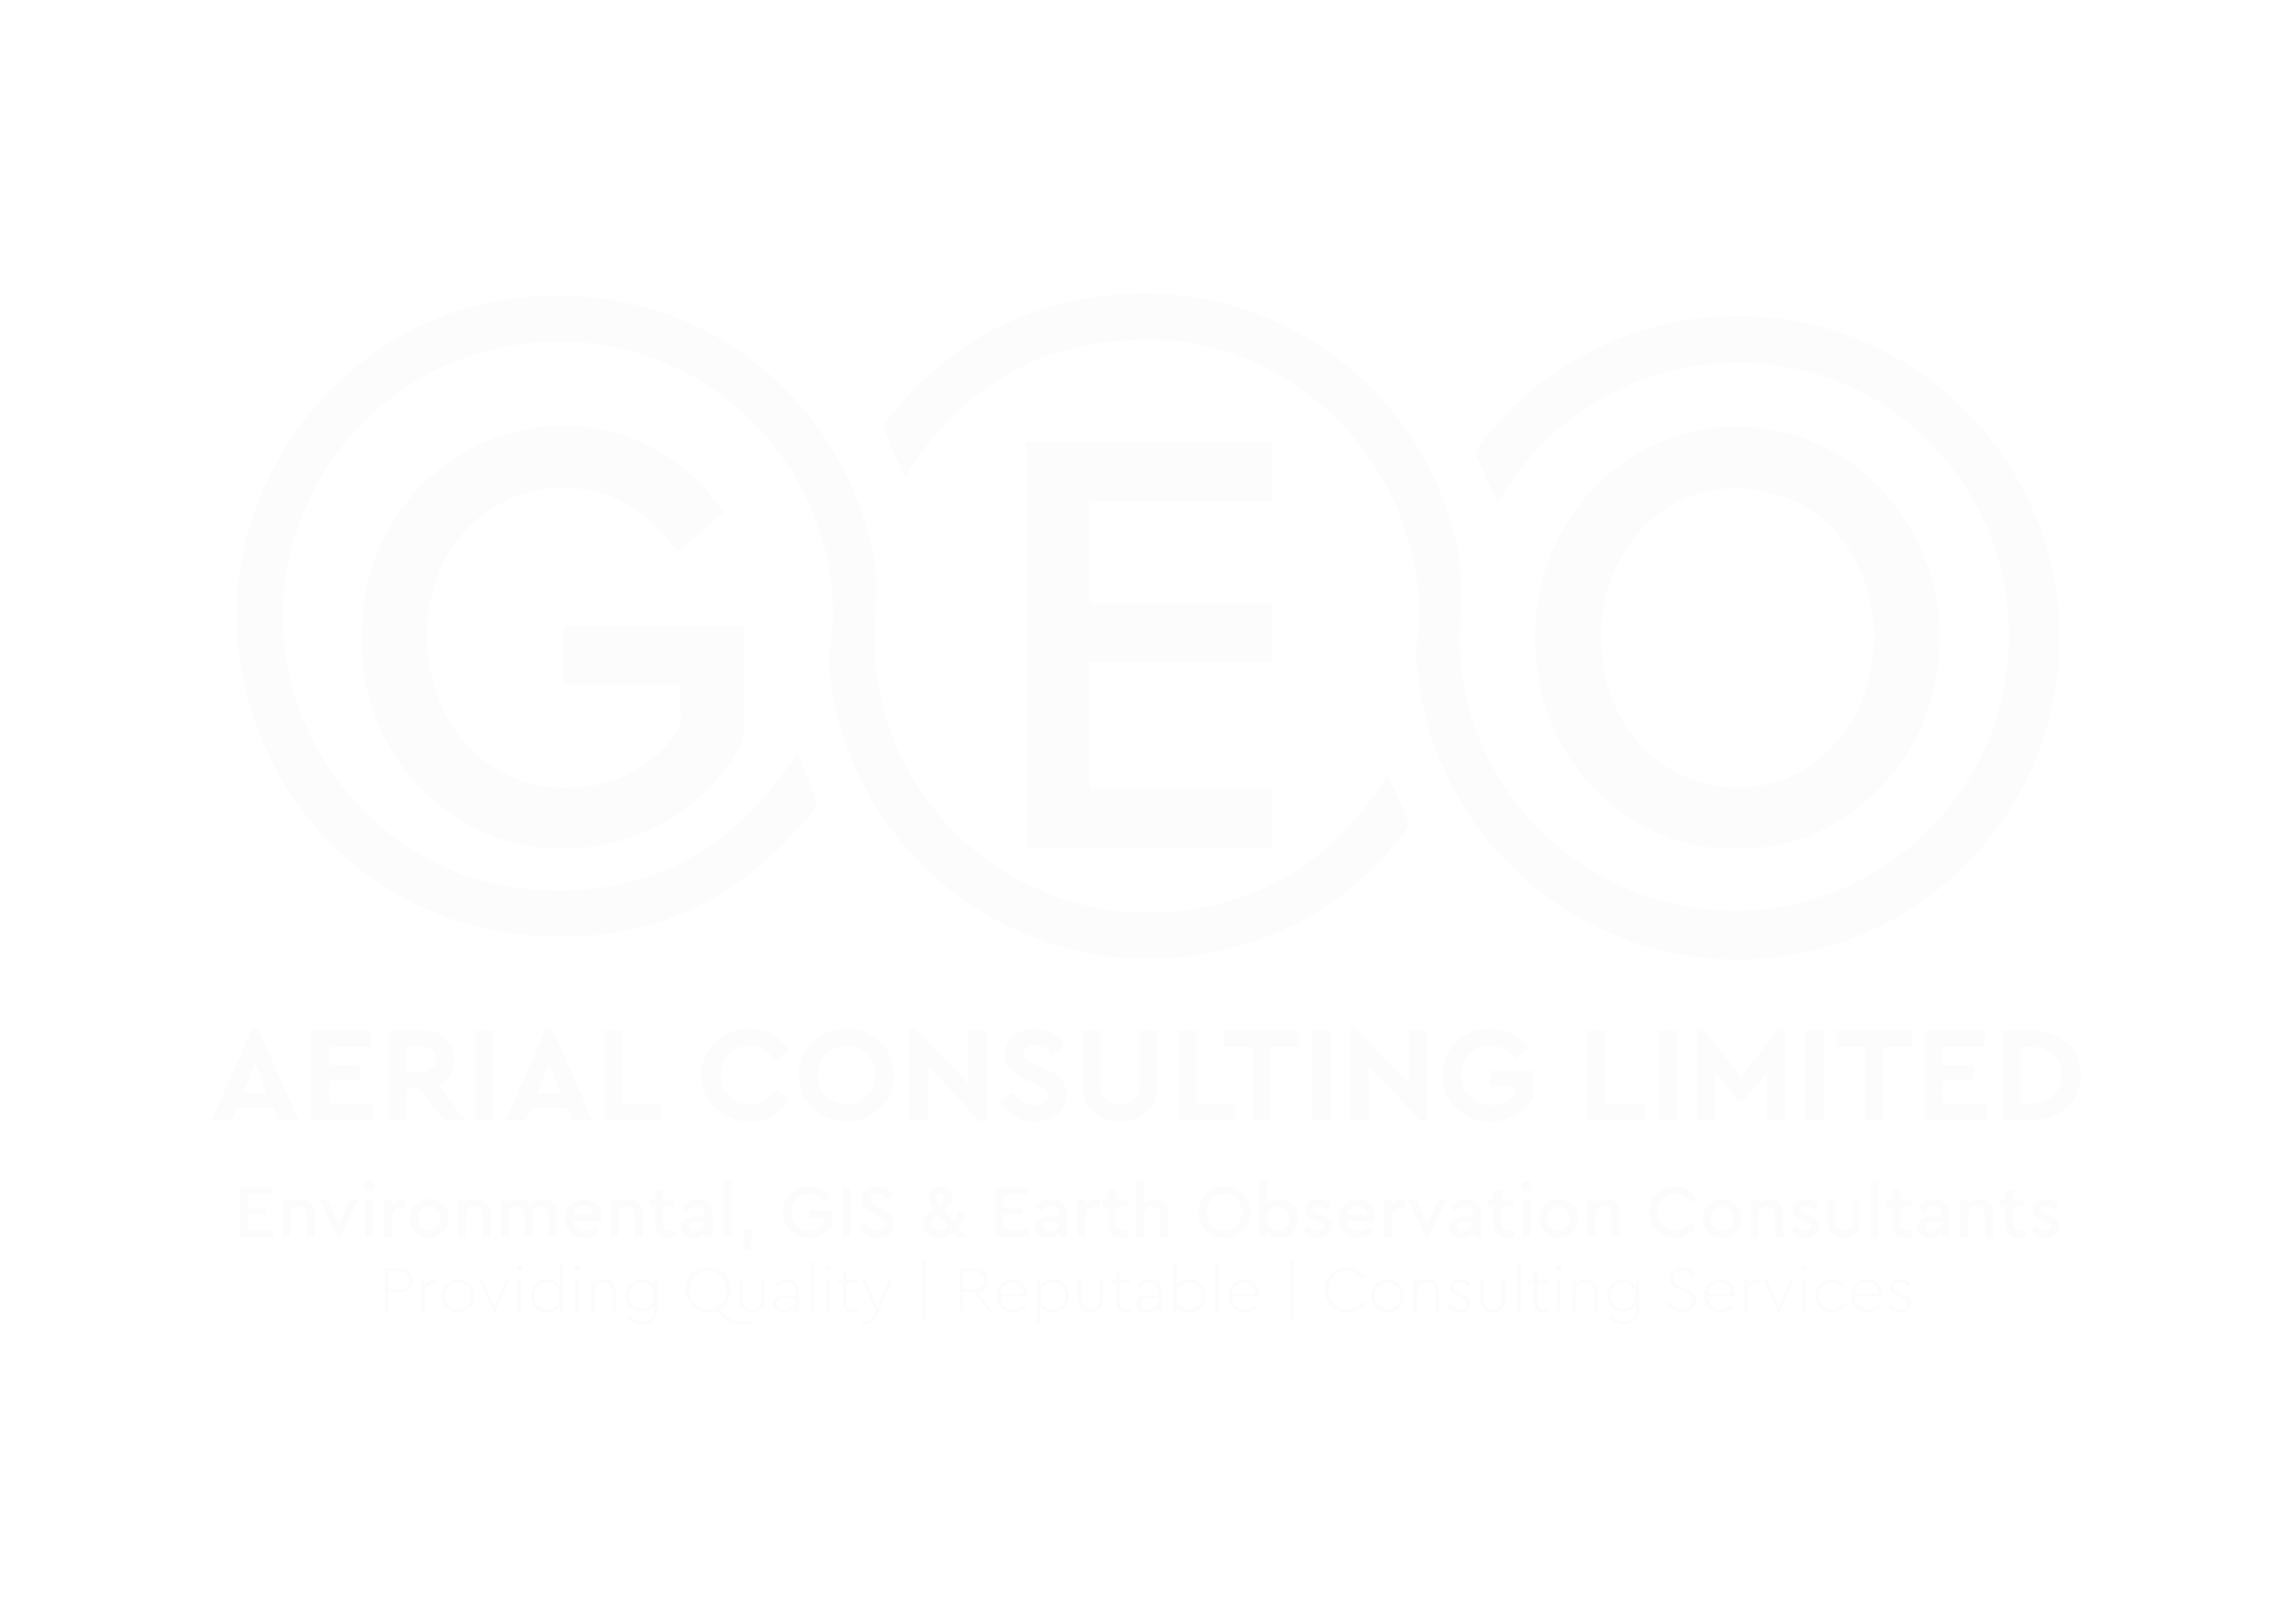 Geo Aerial Consulting